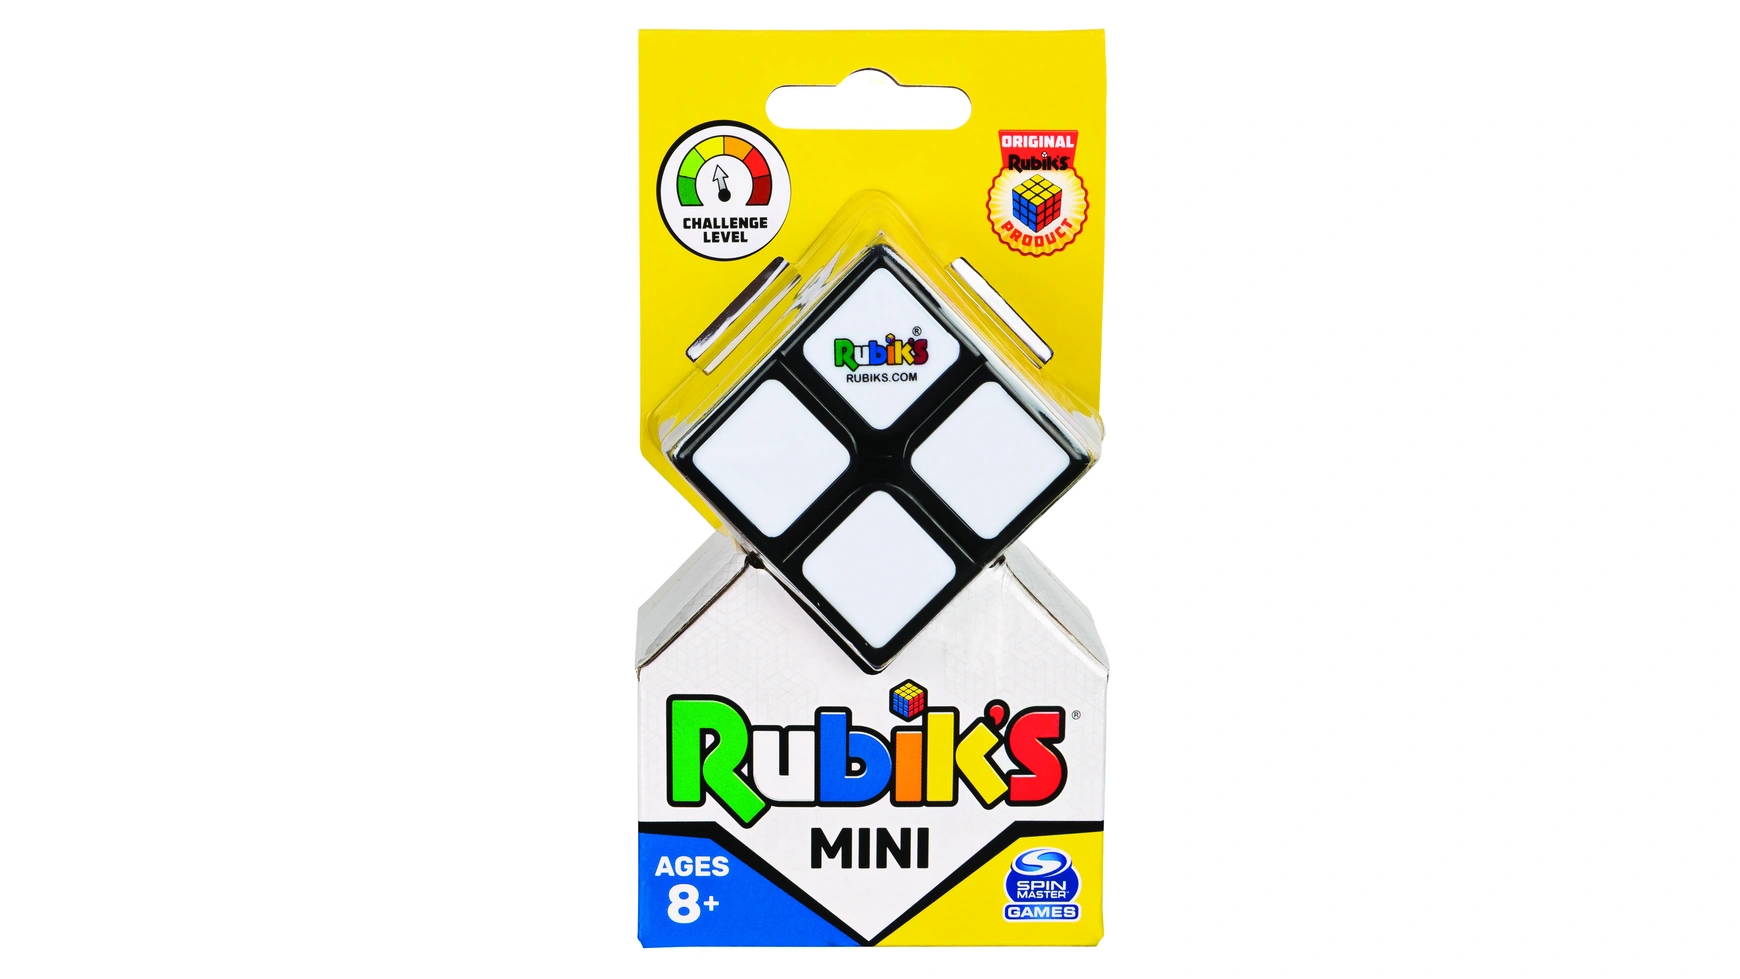 Rubik's Mini 2x2 Кубик Рубика кубик 2x2 для начинающих от 8 лет и для путешествий Spin Master скоростной магнитный кубик рубика qiyi mofangge 5x5x5 valk 5 m черный